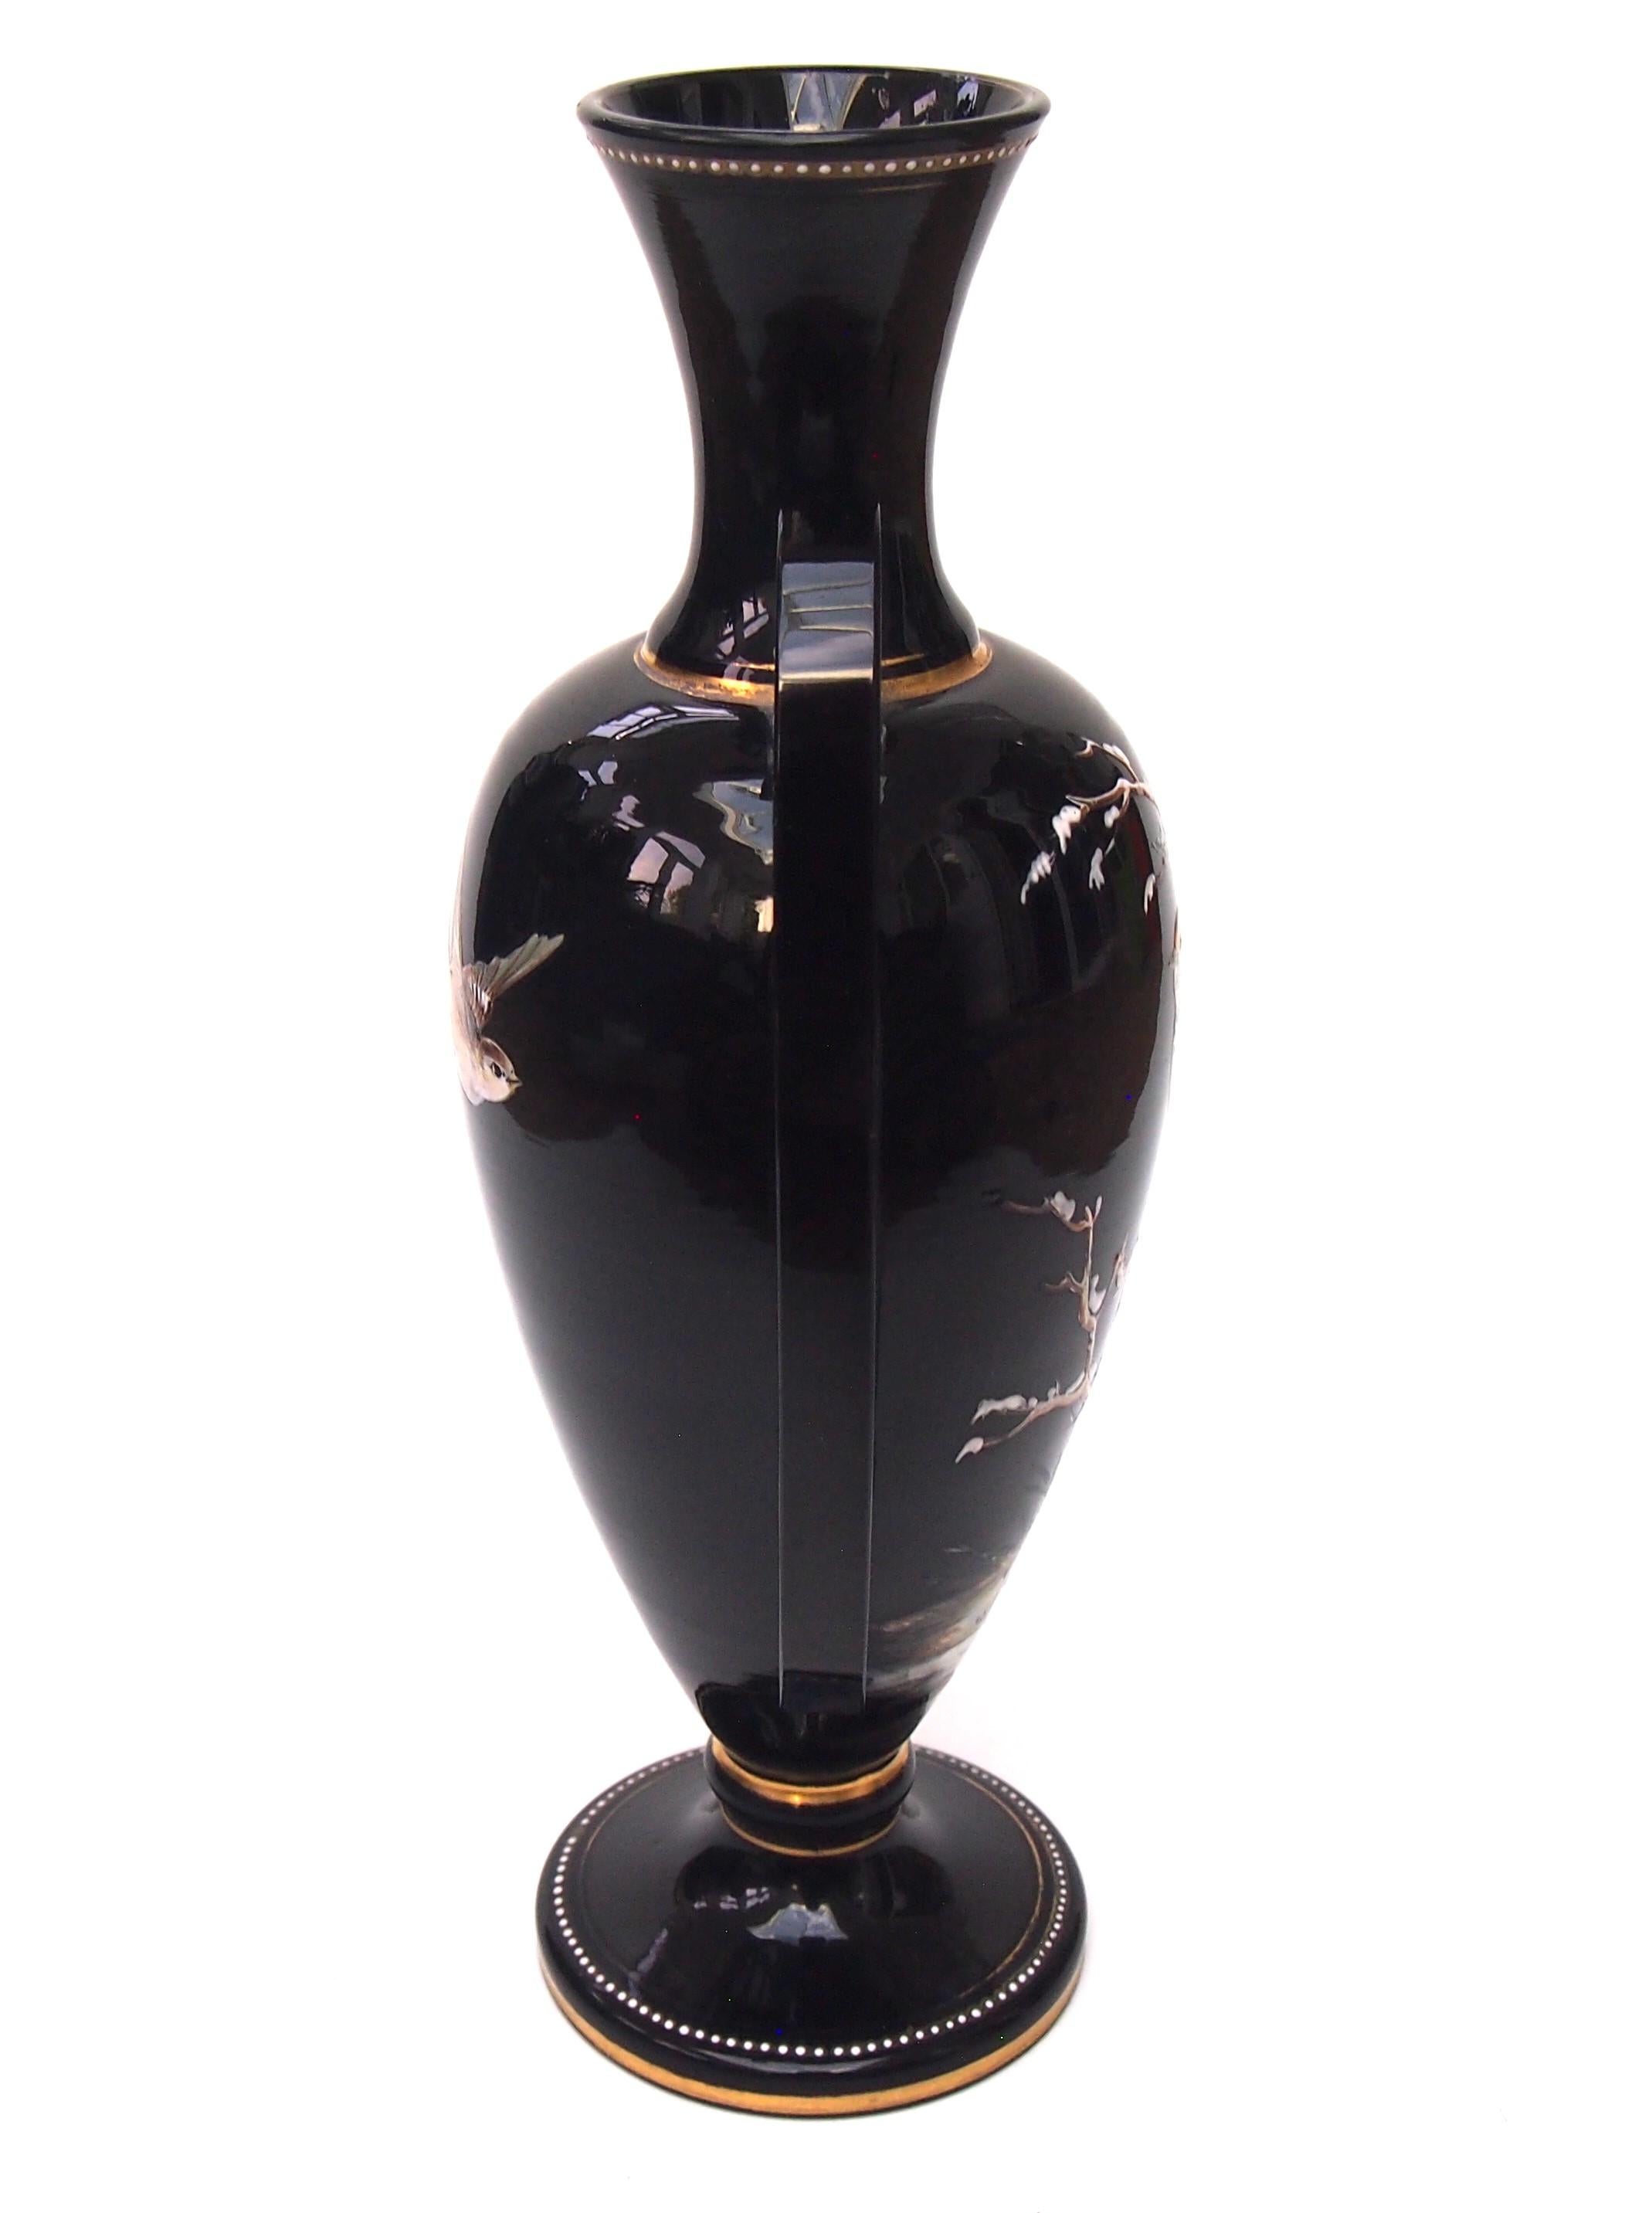 Fabuleux vase Harrach de style victorien classique avec ses applications ailées caractéristiques. Le vase est émaillé et doré avec un joli oiseau sur des branches enneigées à l'avant et un oiseau en vol à l'arrière. Les longues 